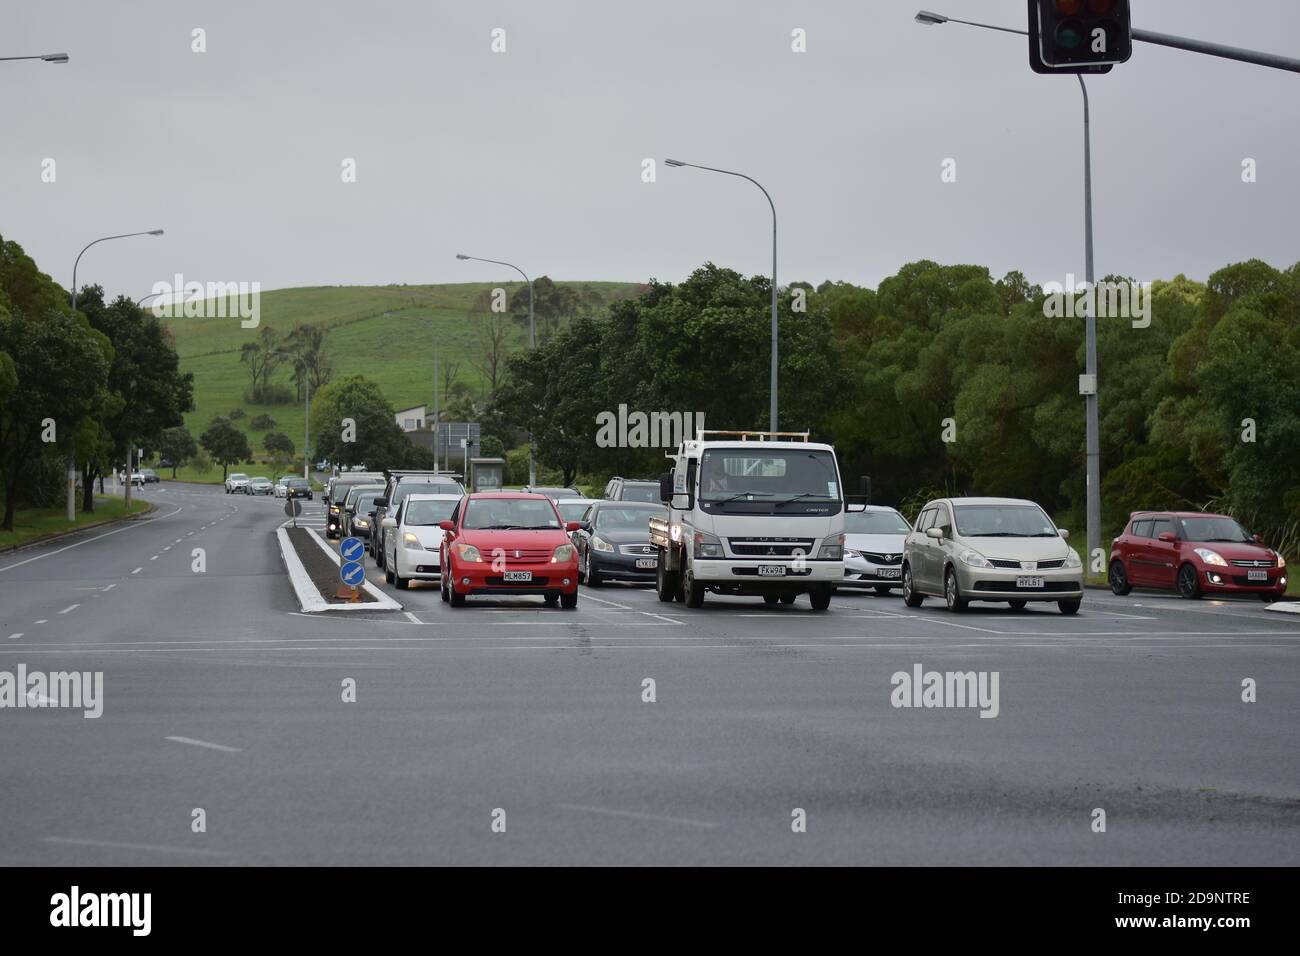 AUCKLAND, NUEVA ZELANDA - 05 de noviembre de 2020: Vista frontal de los coches pararon en el semáforo de Smales Road desde Re Irirangi Drive Foto de stock